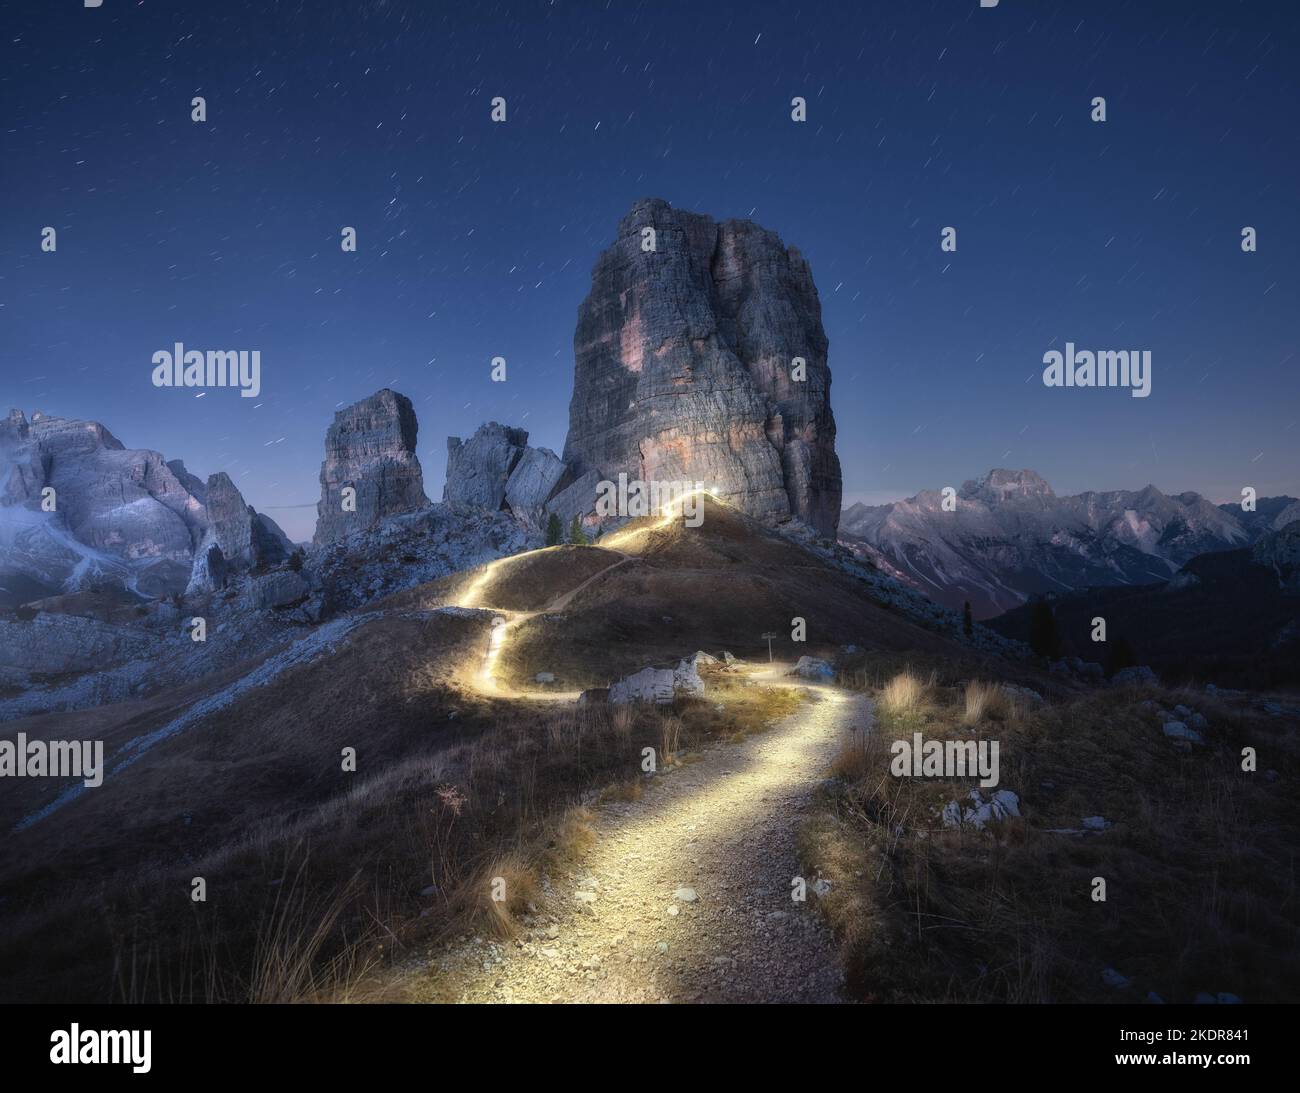 Senderos de linterna en el camino de montaña contra rocas altas por la noche Foto de stock